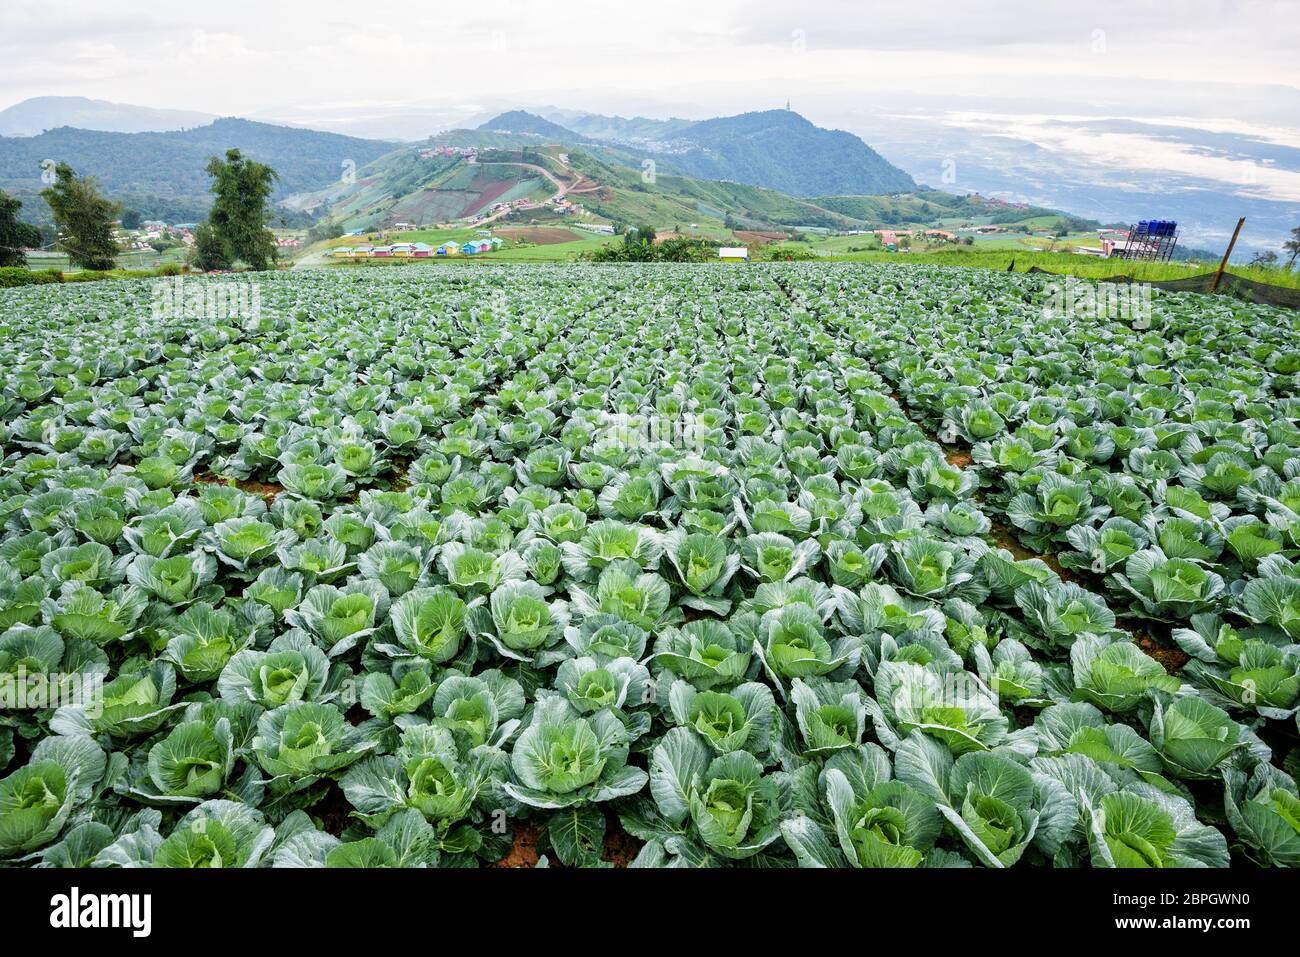 Plantation de choux ou de Brassica oleracea belle nature des rangées de légumes verts dans les zones cultivées, l'agriculture en milieu rural sur la haute montagne Banque D'Images